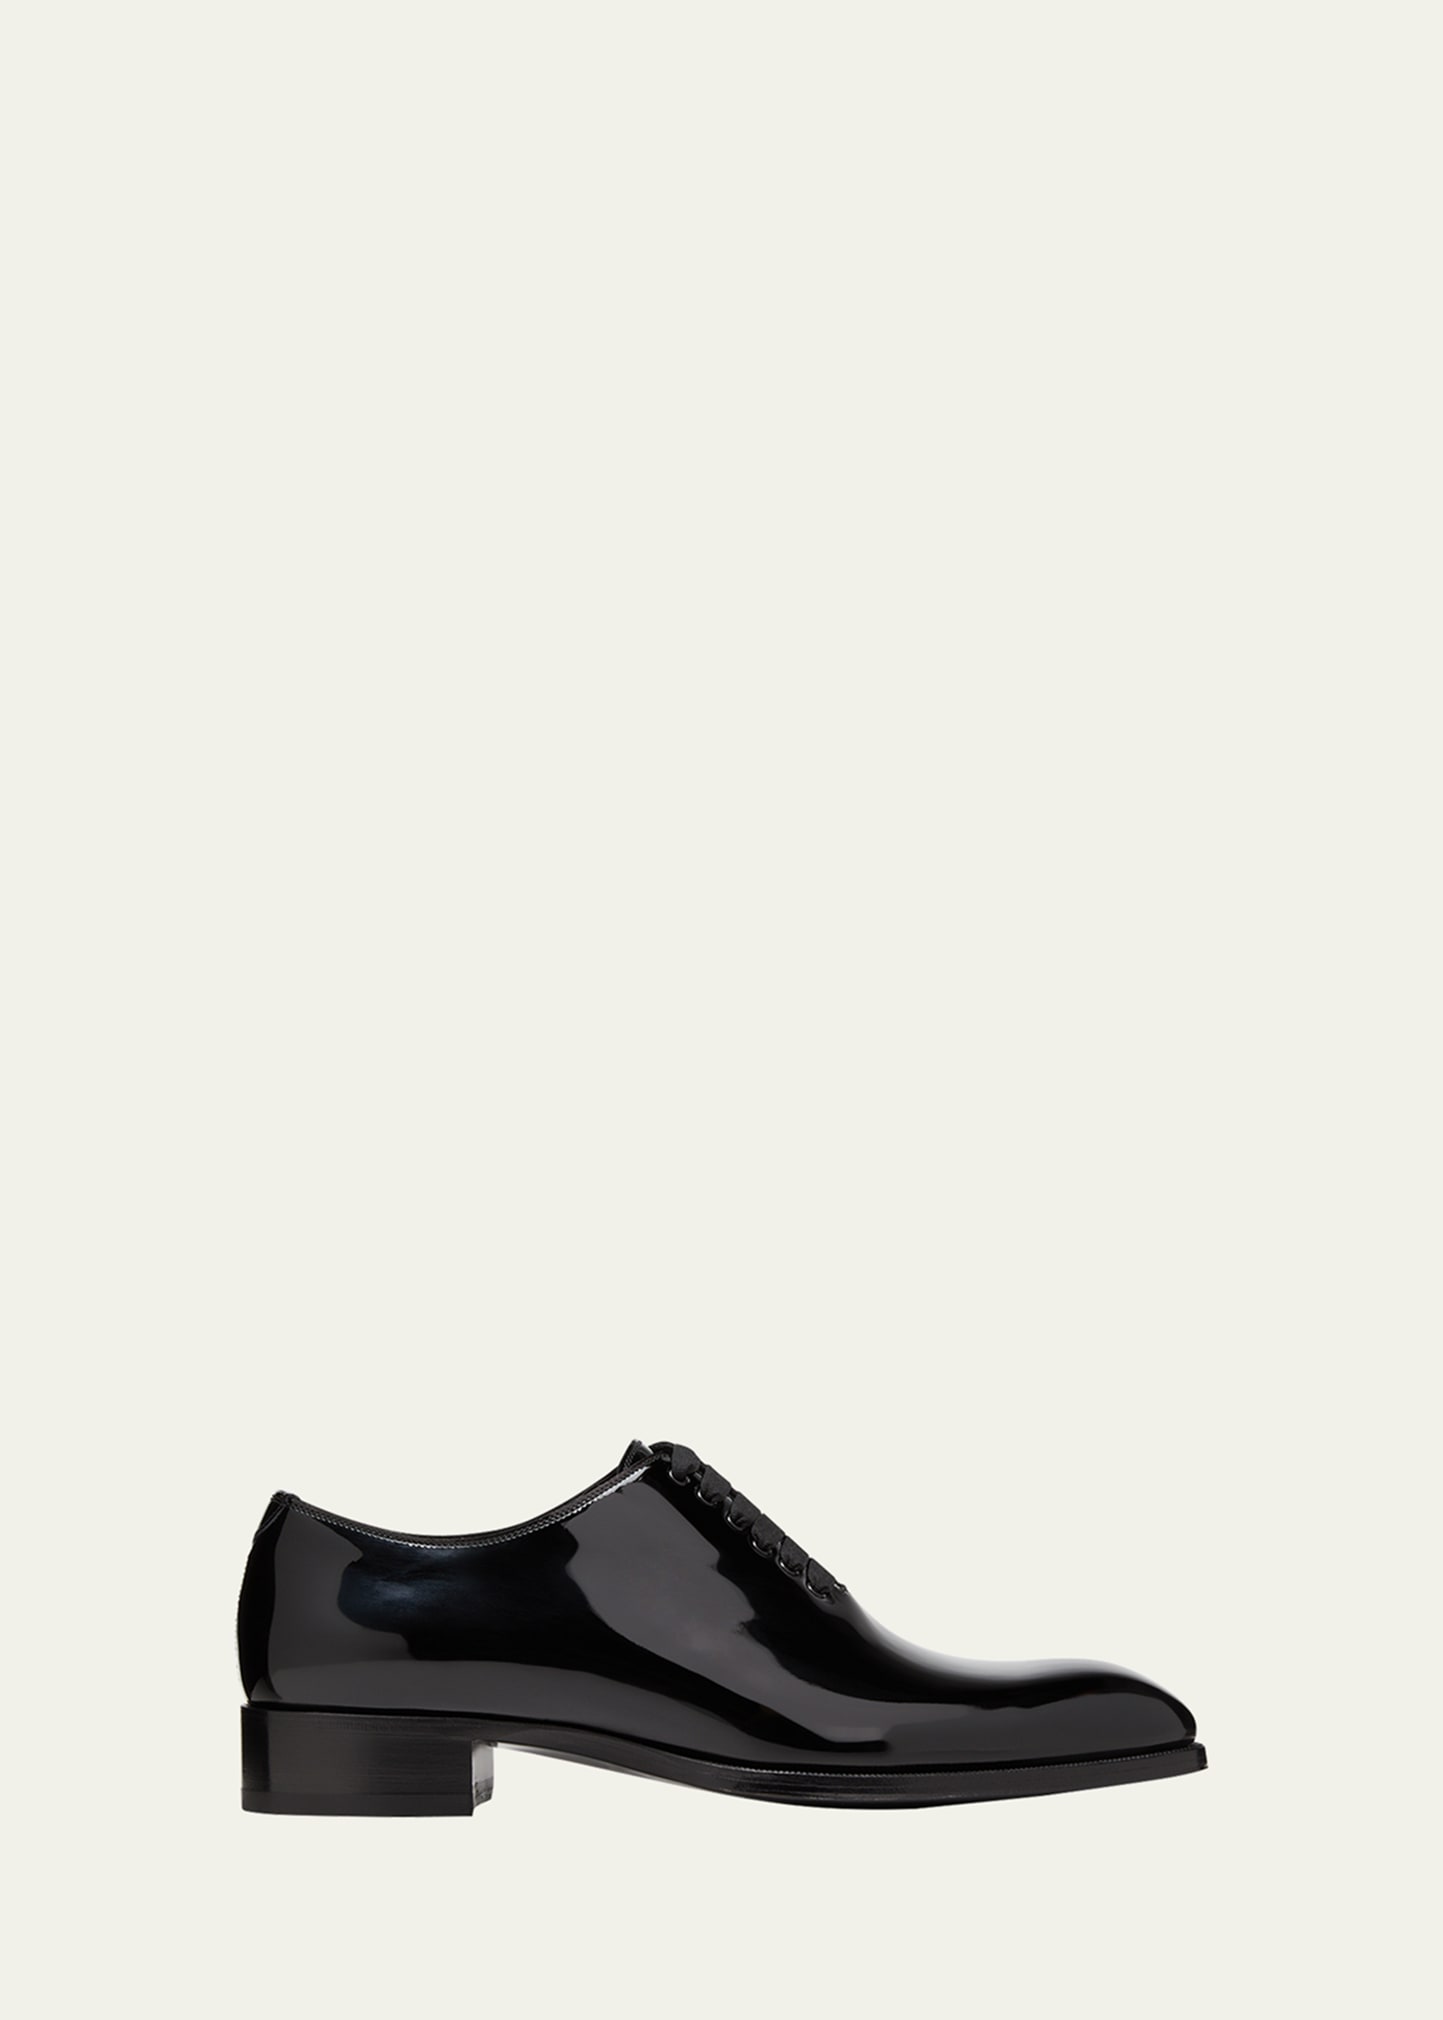 Tom Ford Men's Elkan Patent Leather Oxfords In Black